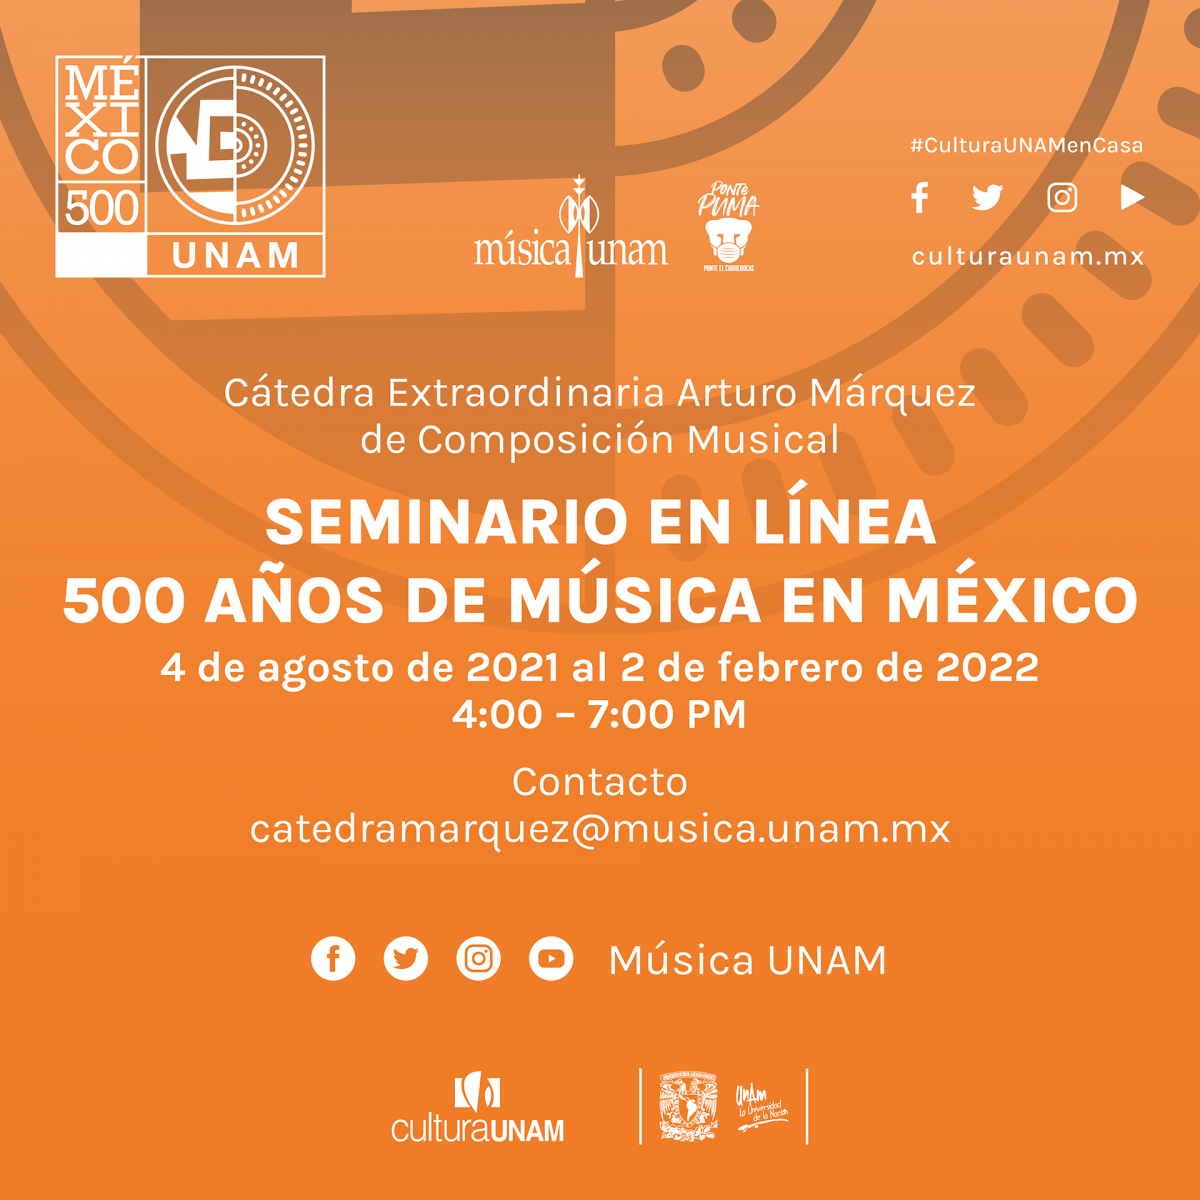 Imagen del seminario 500 años de música en México que incluye las fechas de realización